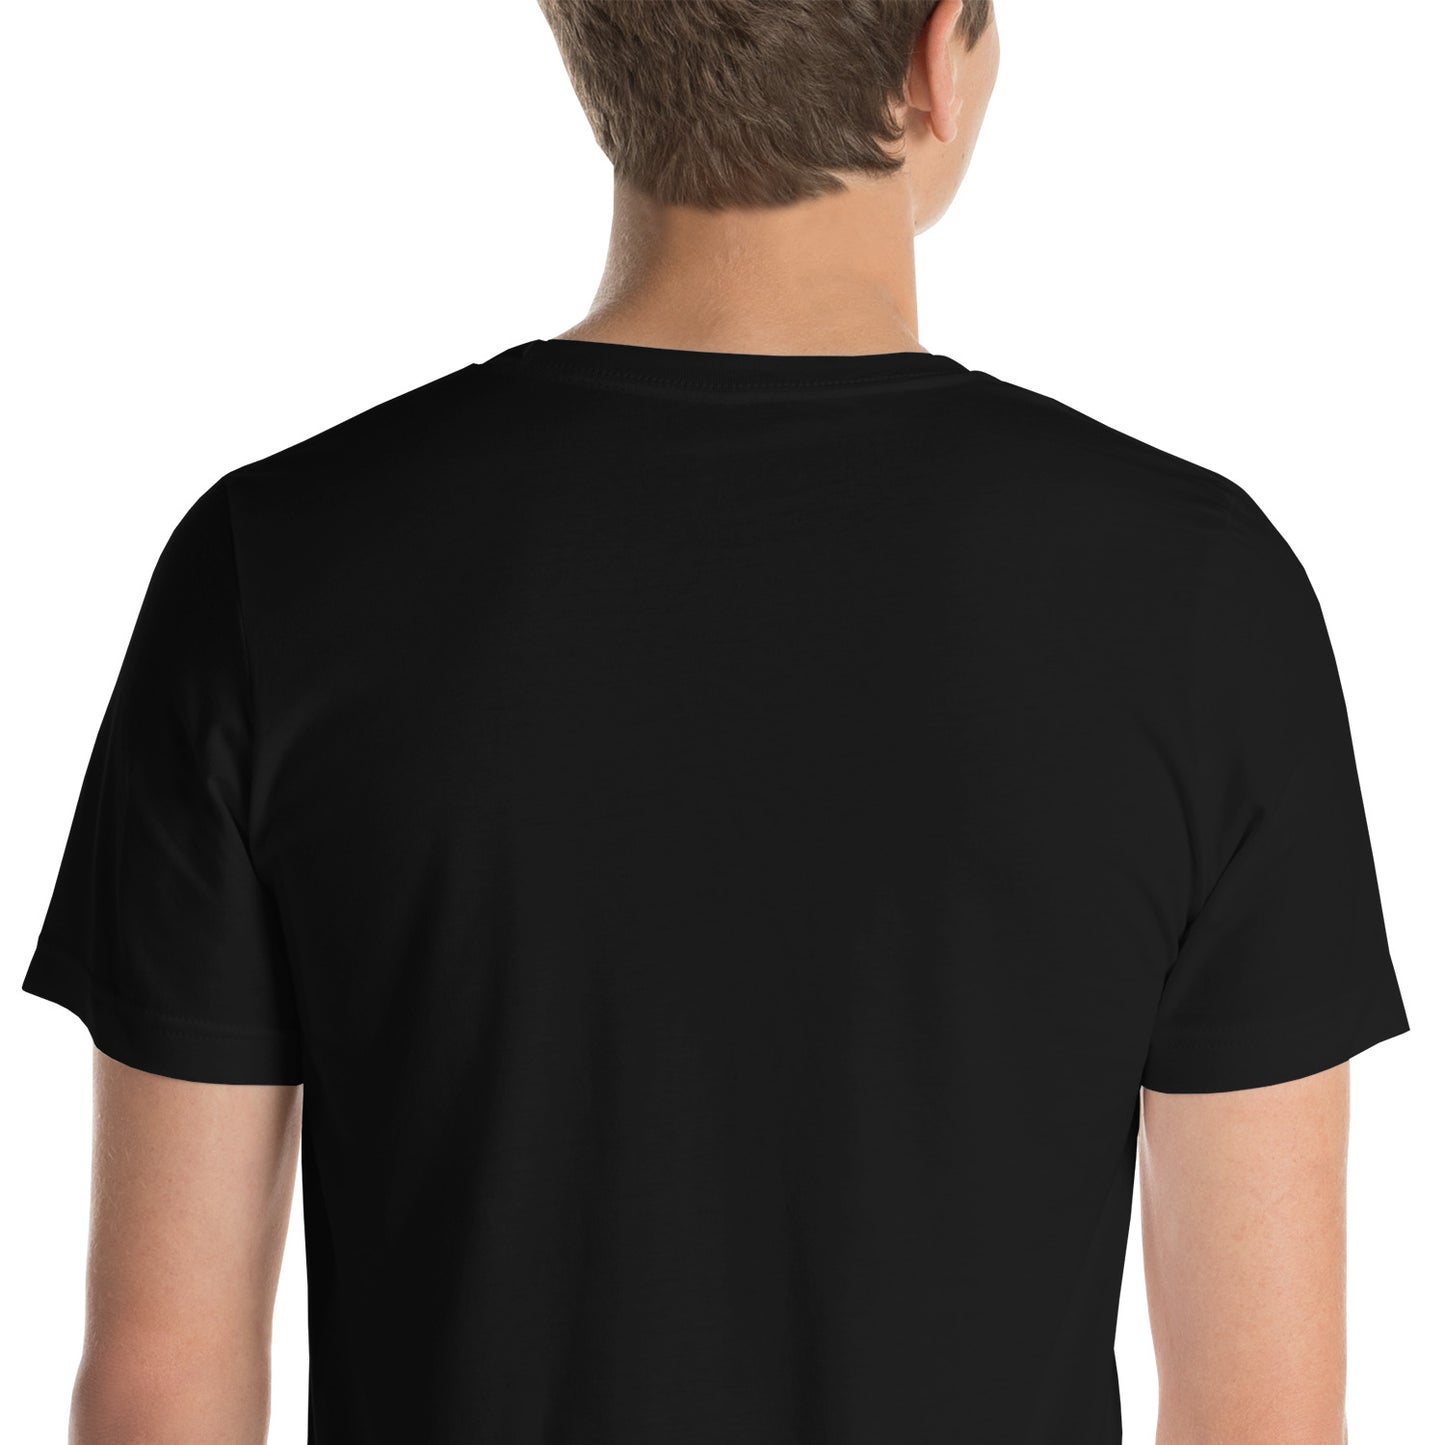 The UFO Rabbit Hole Unisex T-Shirt